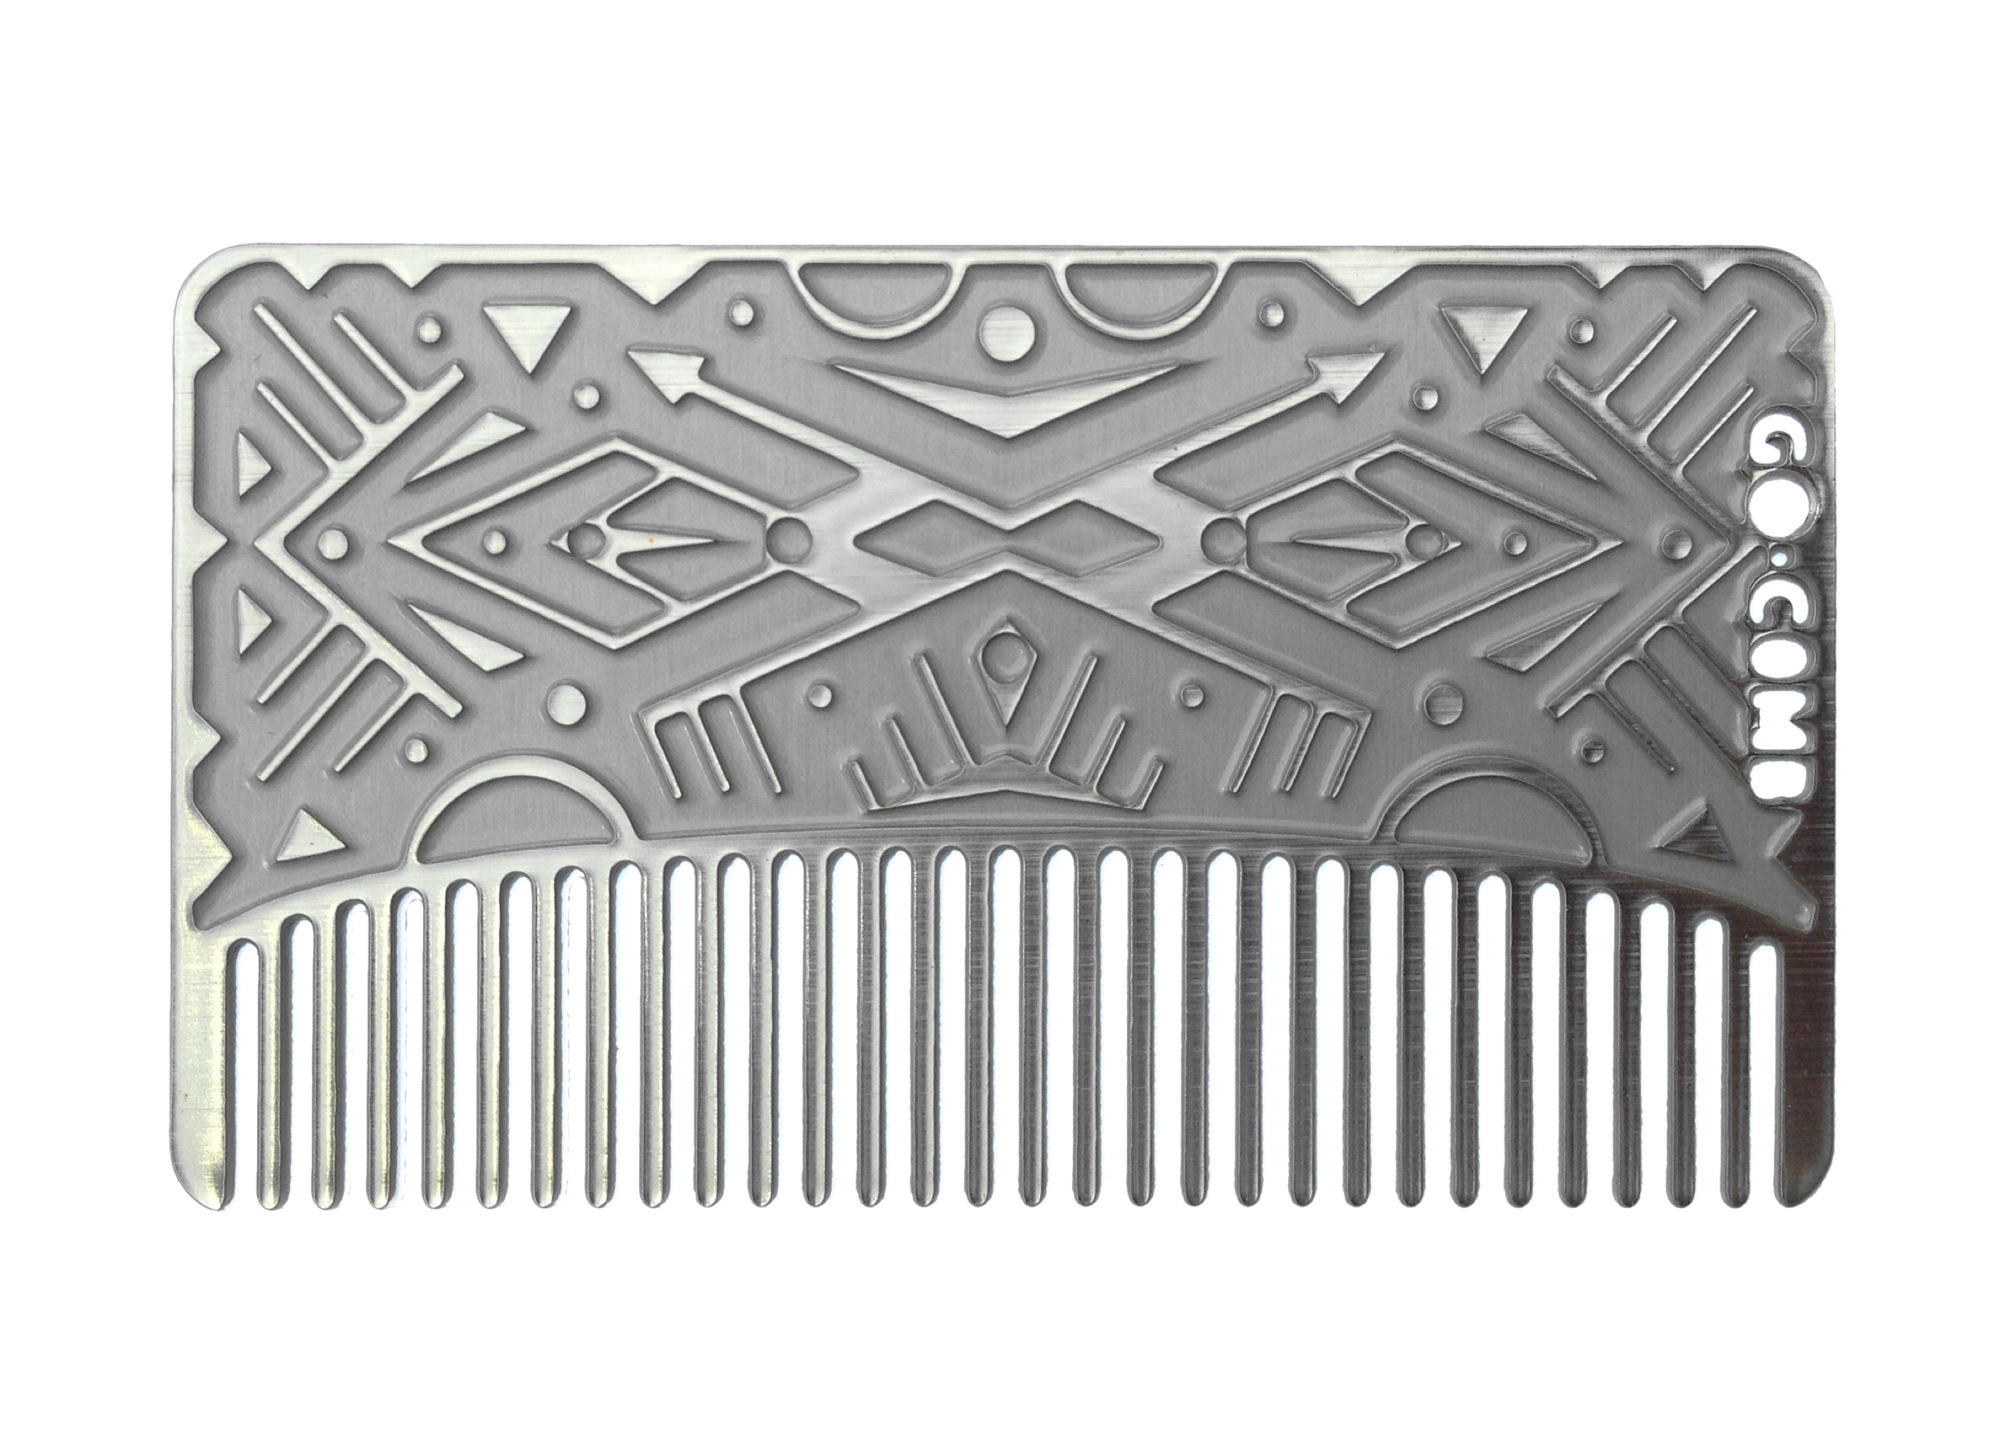 Go Comb Minka Sicklinger Silver Limited Edition Comb